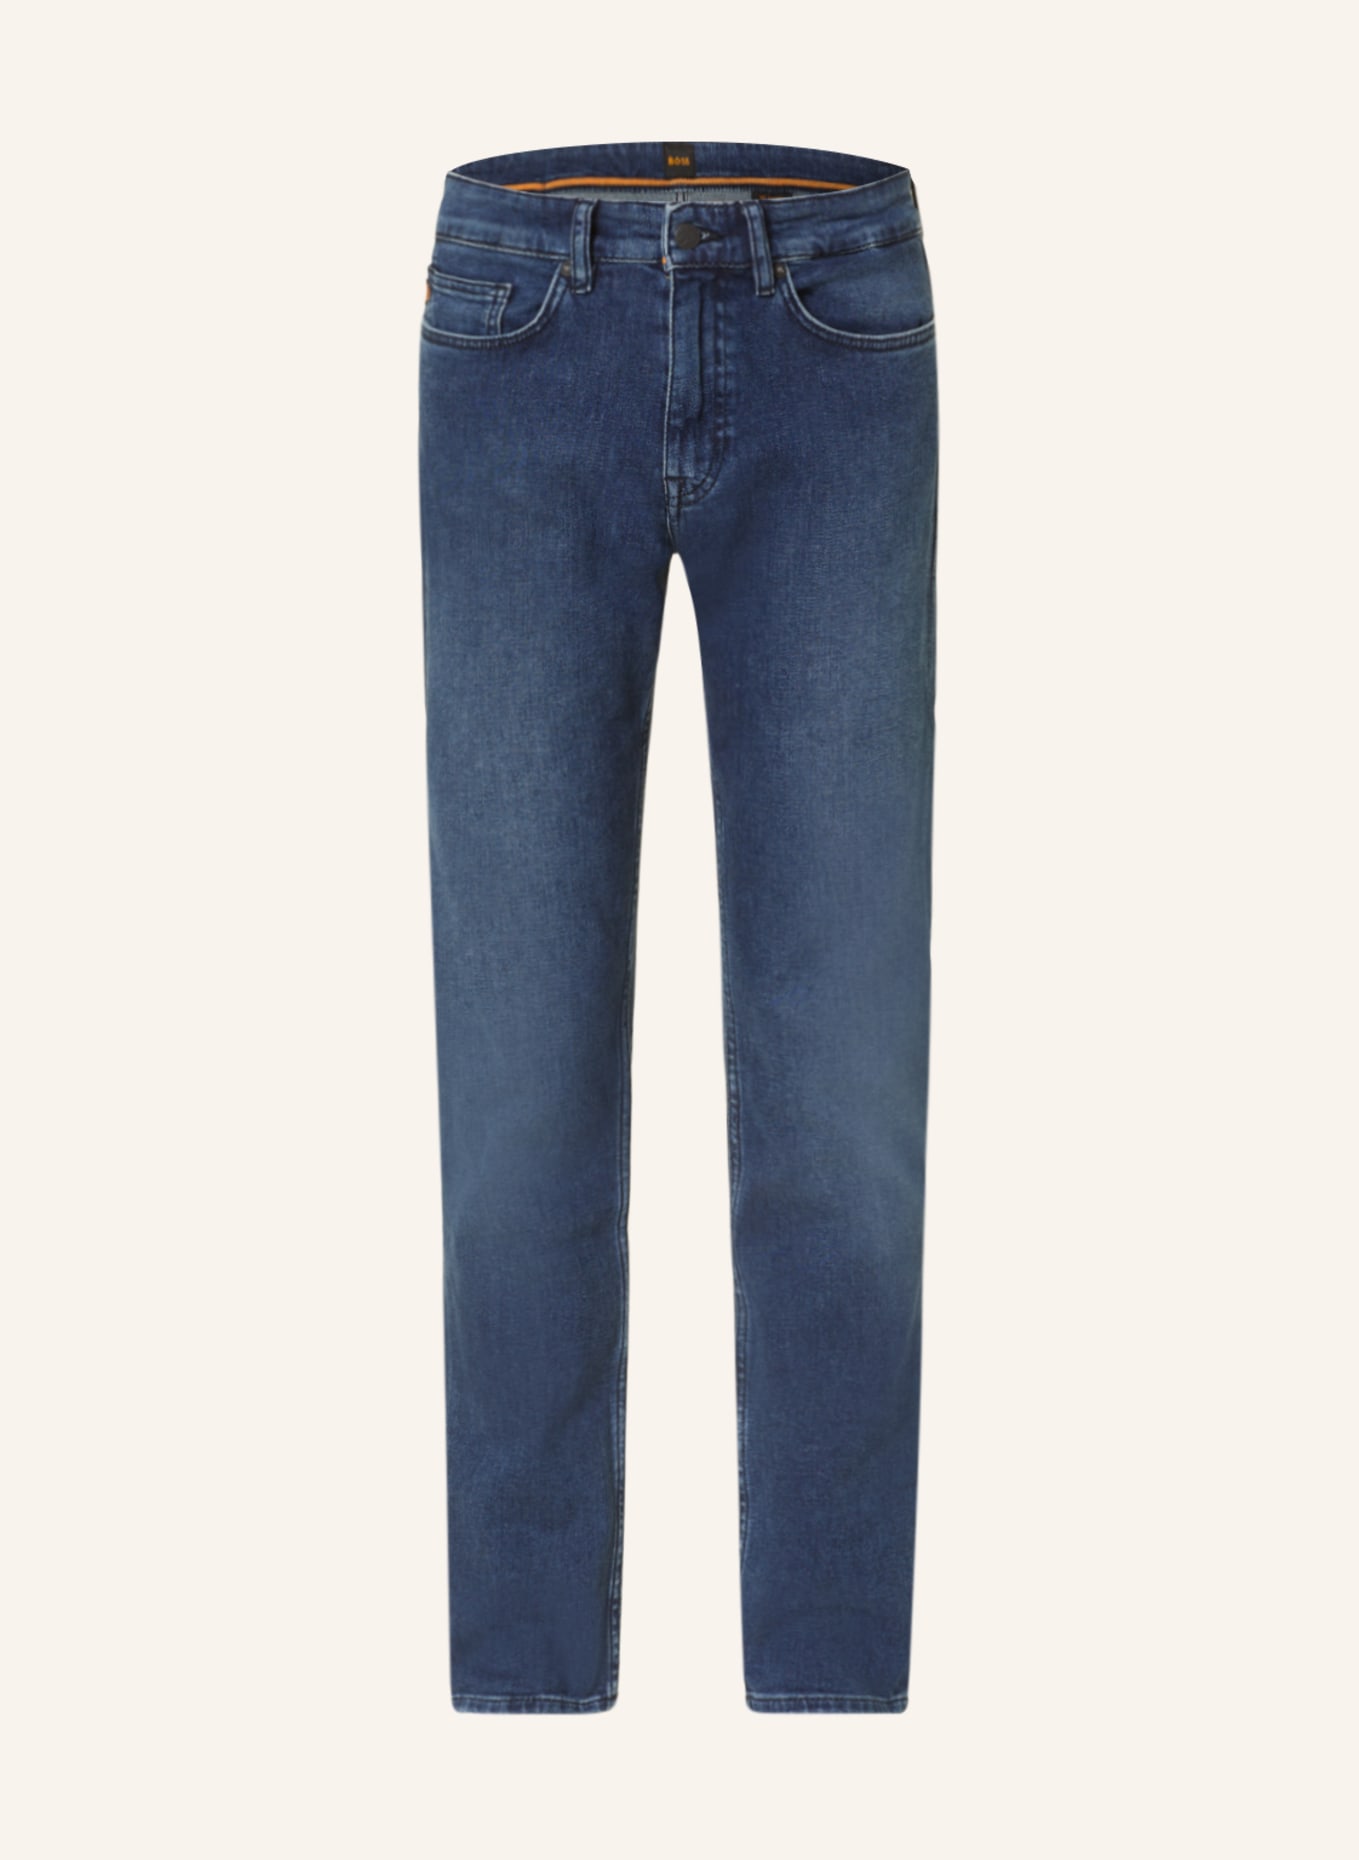 BOSS Jeans DELAWARE Slim Fit, Farbe: 414 NAVY (Bild 1)